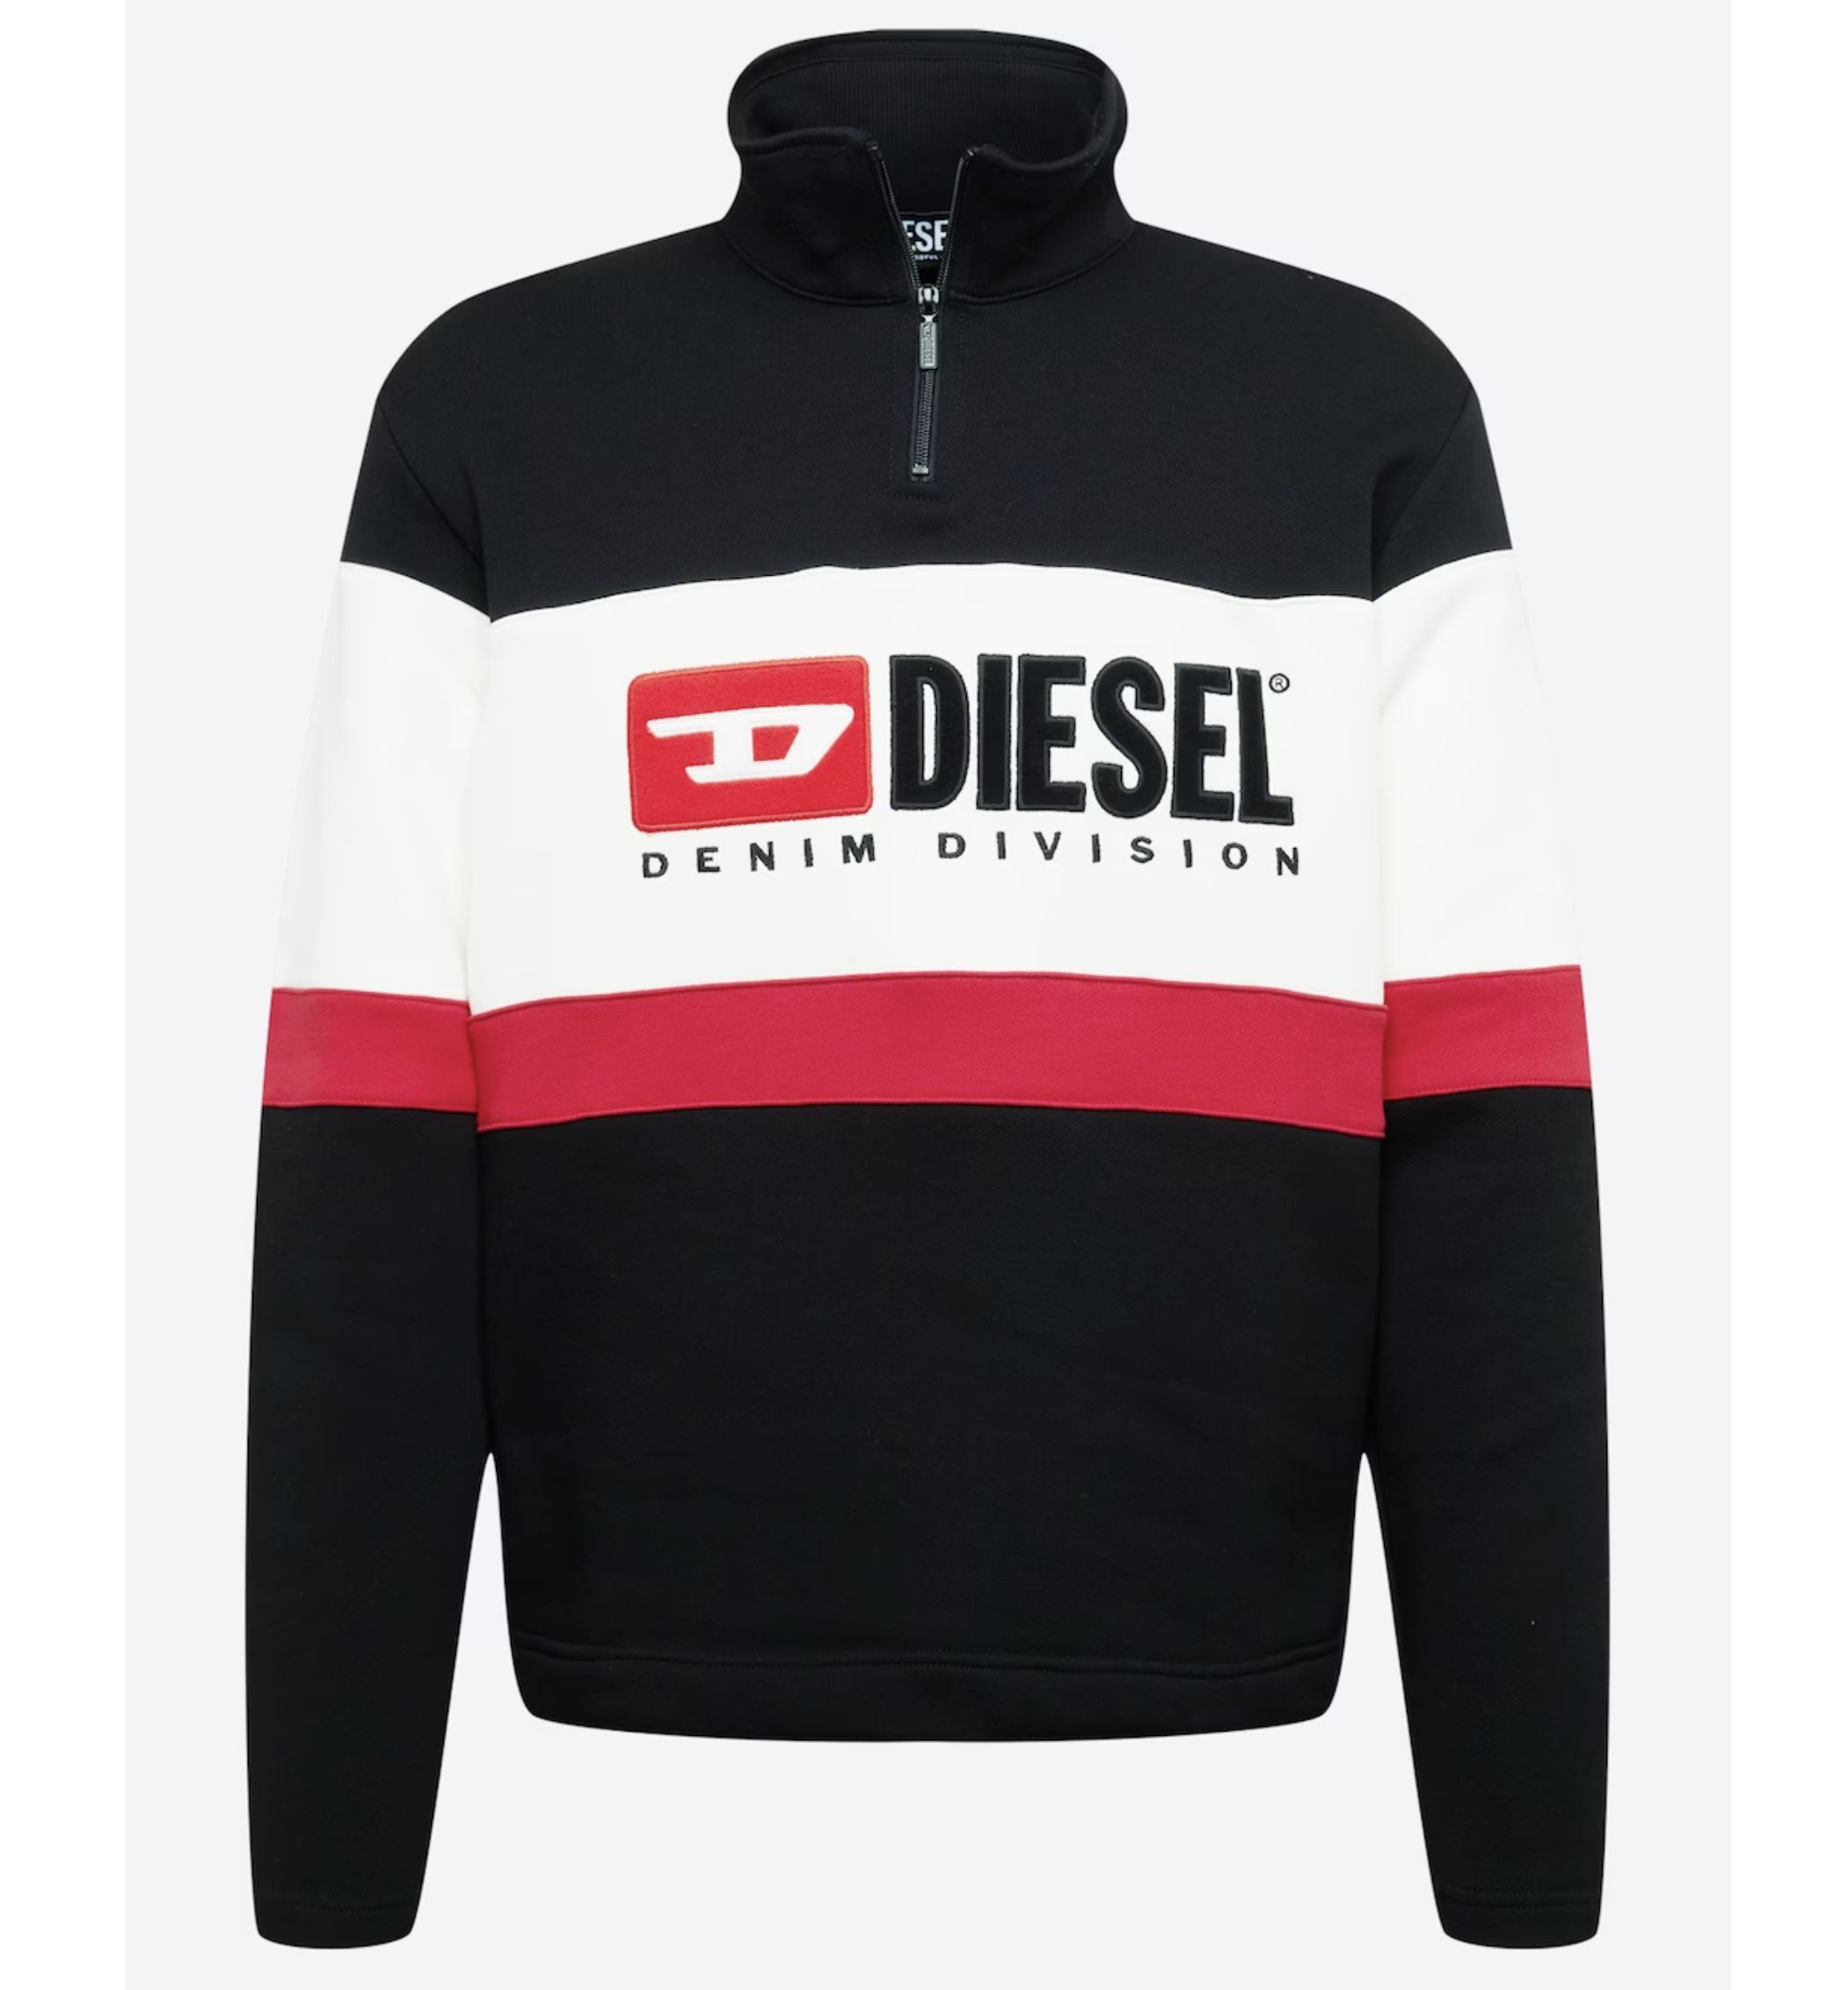 Diesel S Saint Division Sweatshirt für 82,50€ (statt 135€)